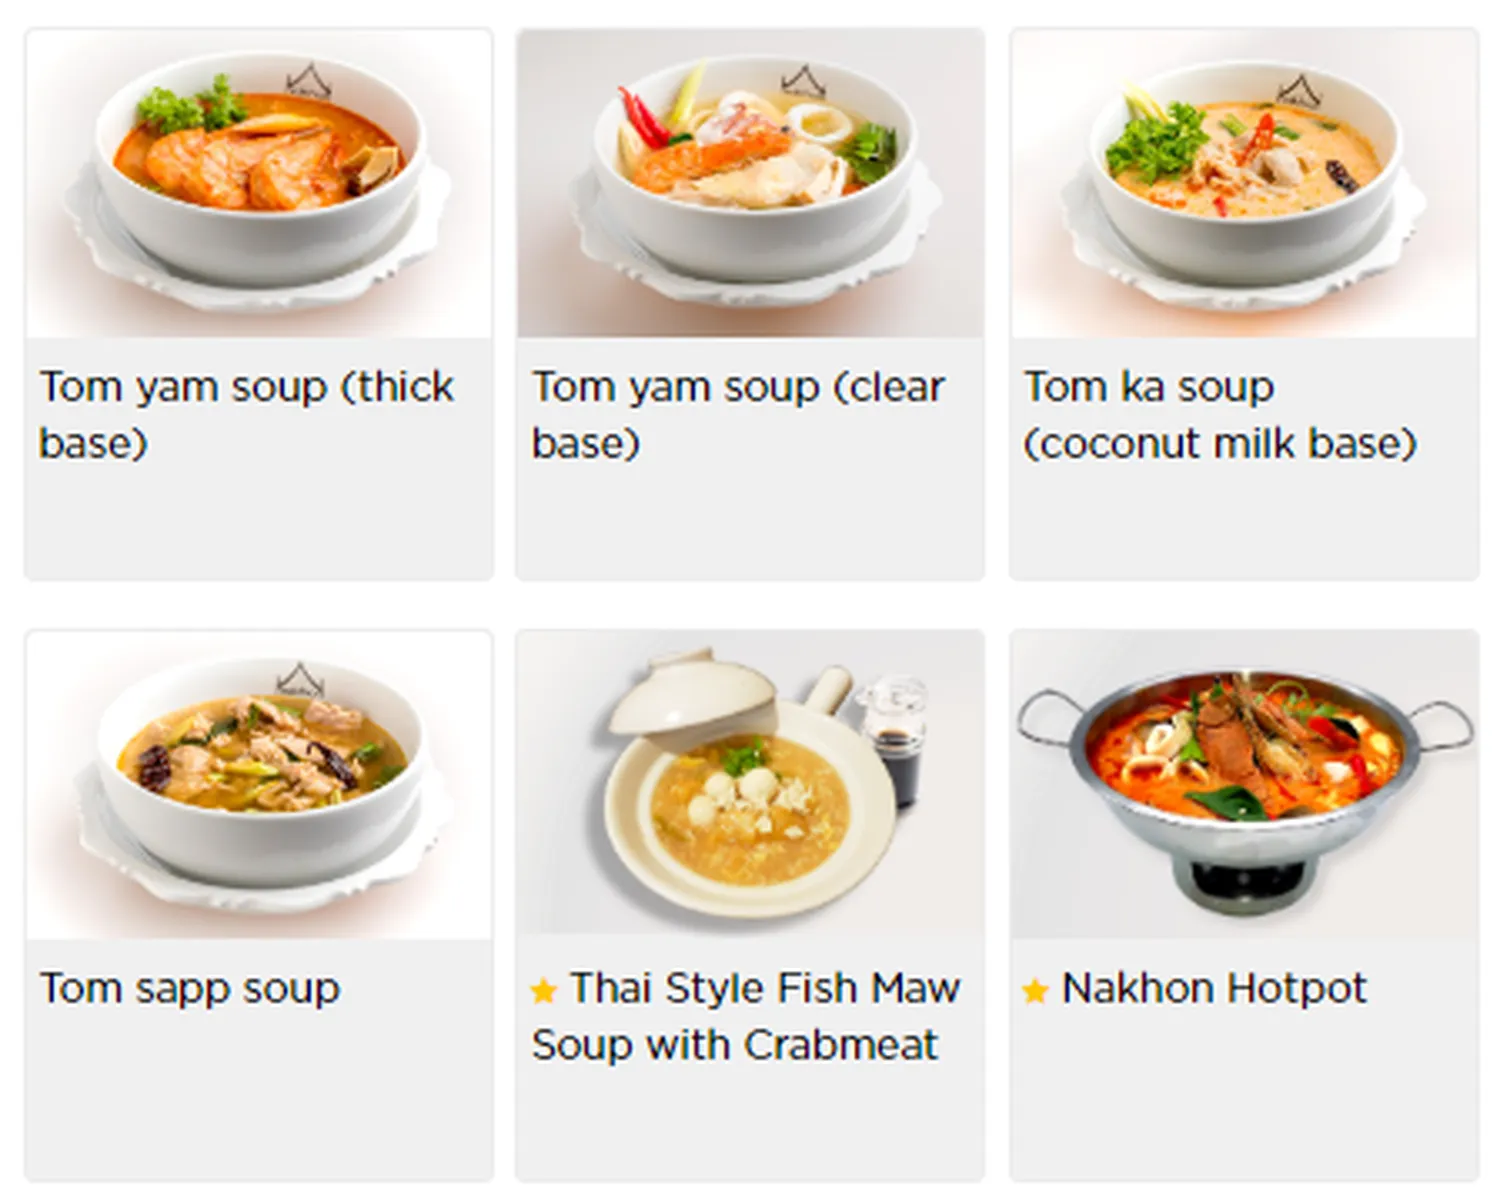 nakhon kitchen menu singapore soup